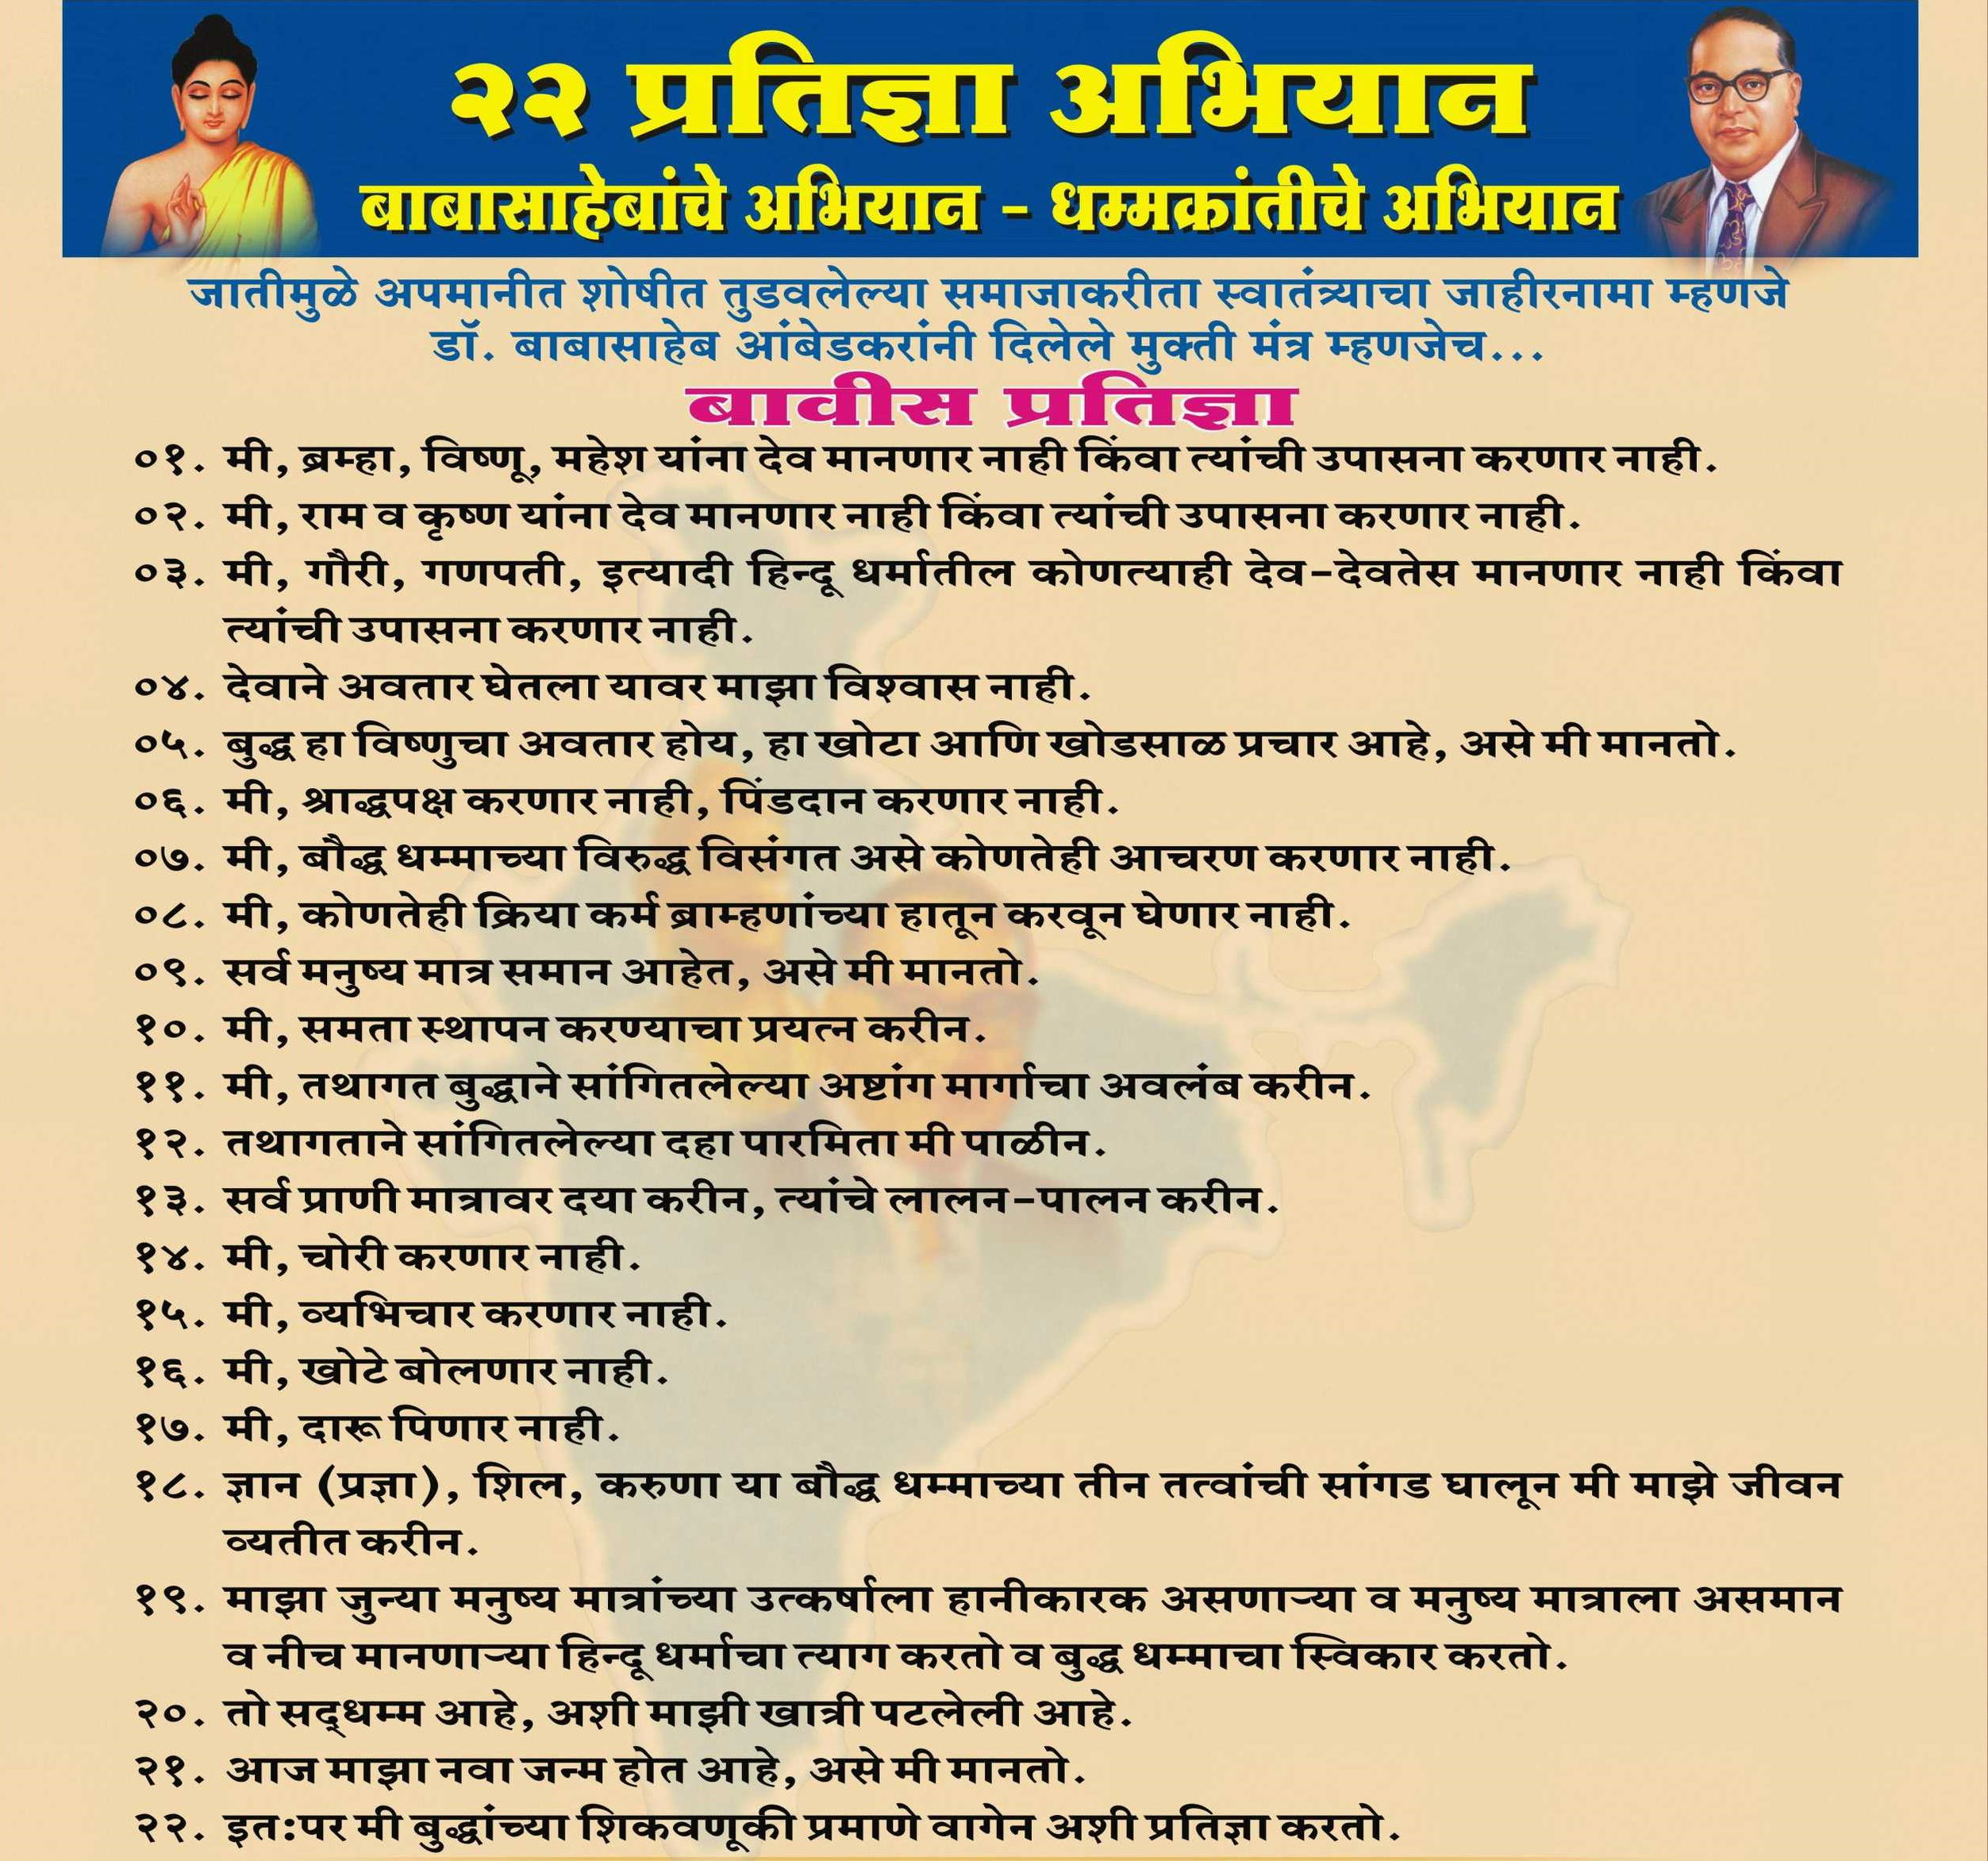 dr babasaheb ambedkar biography in marathi pdf books